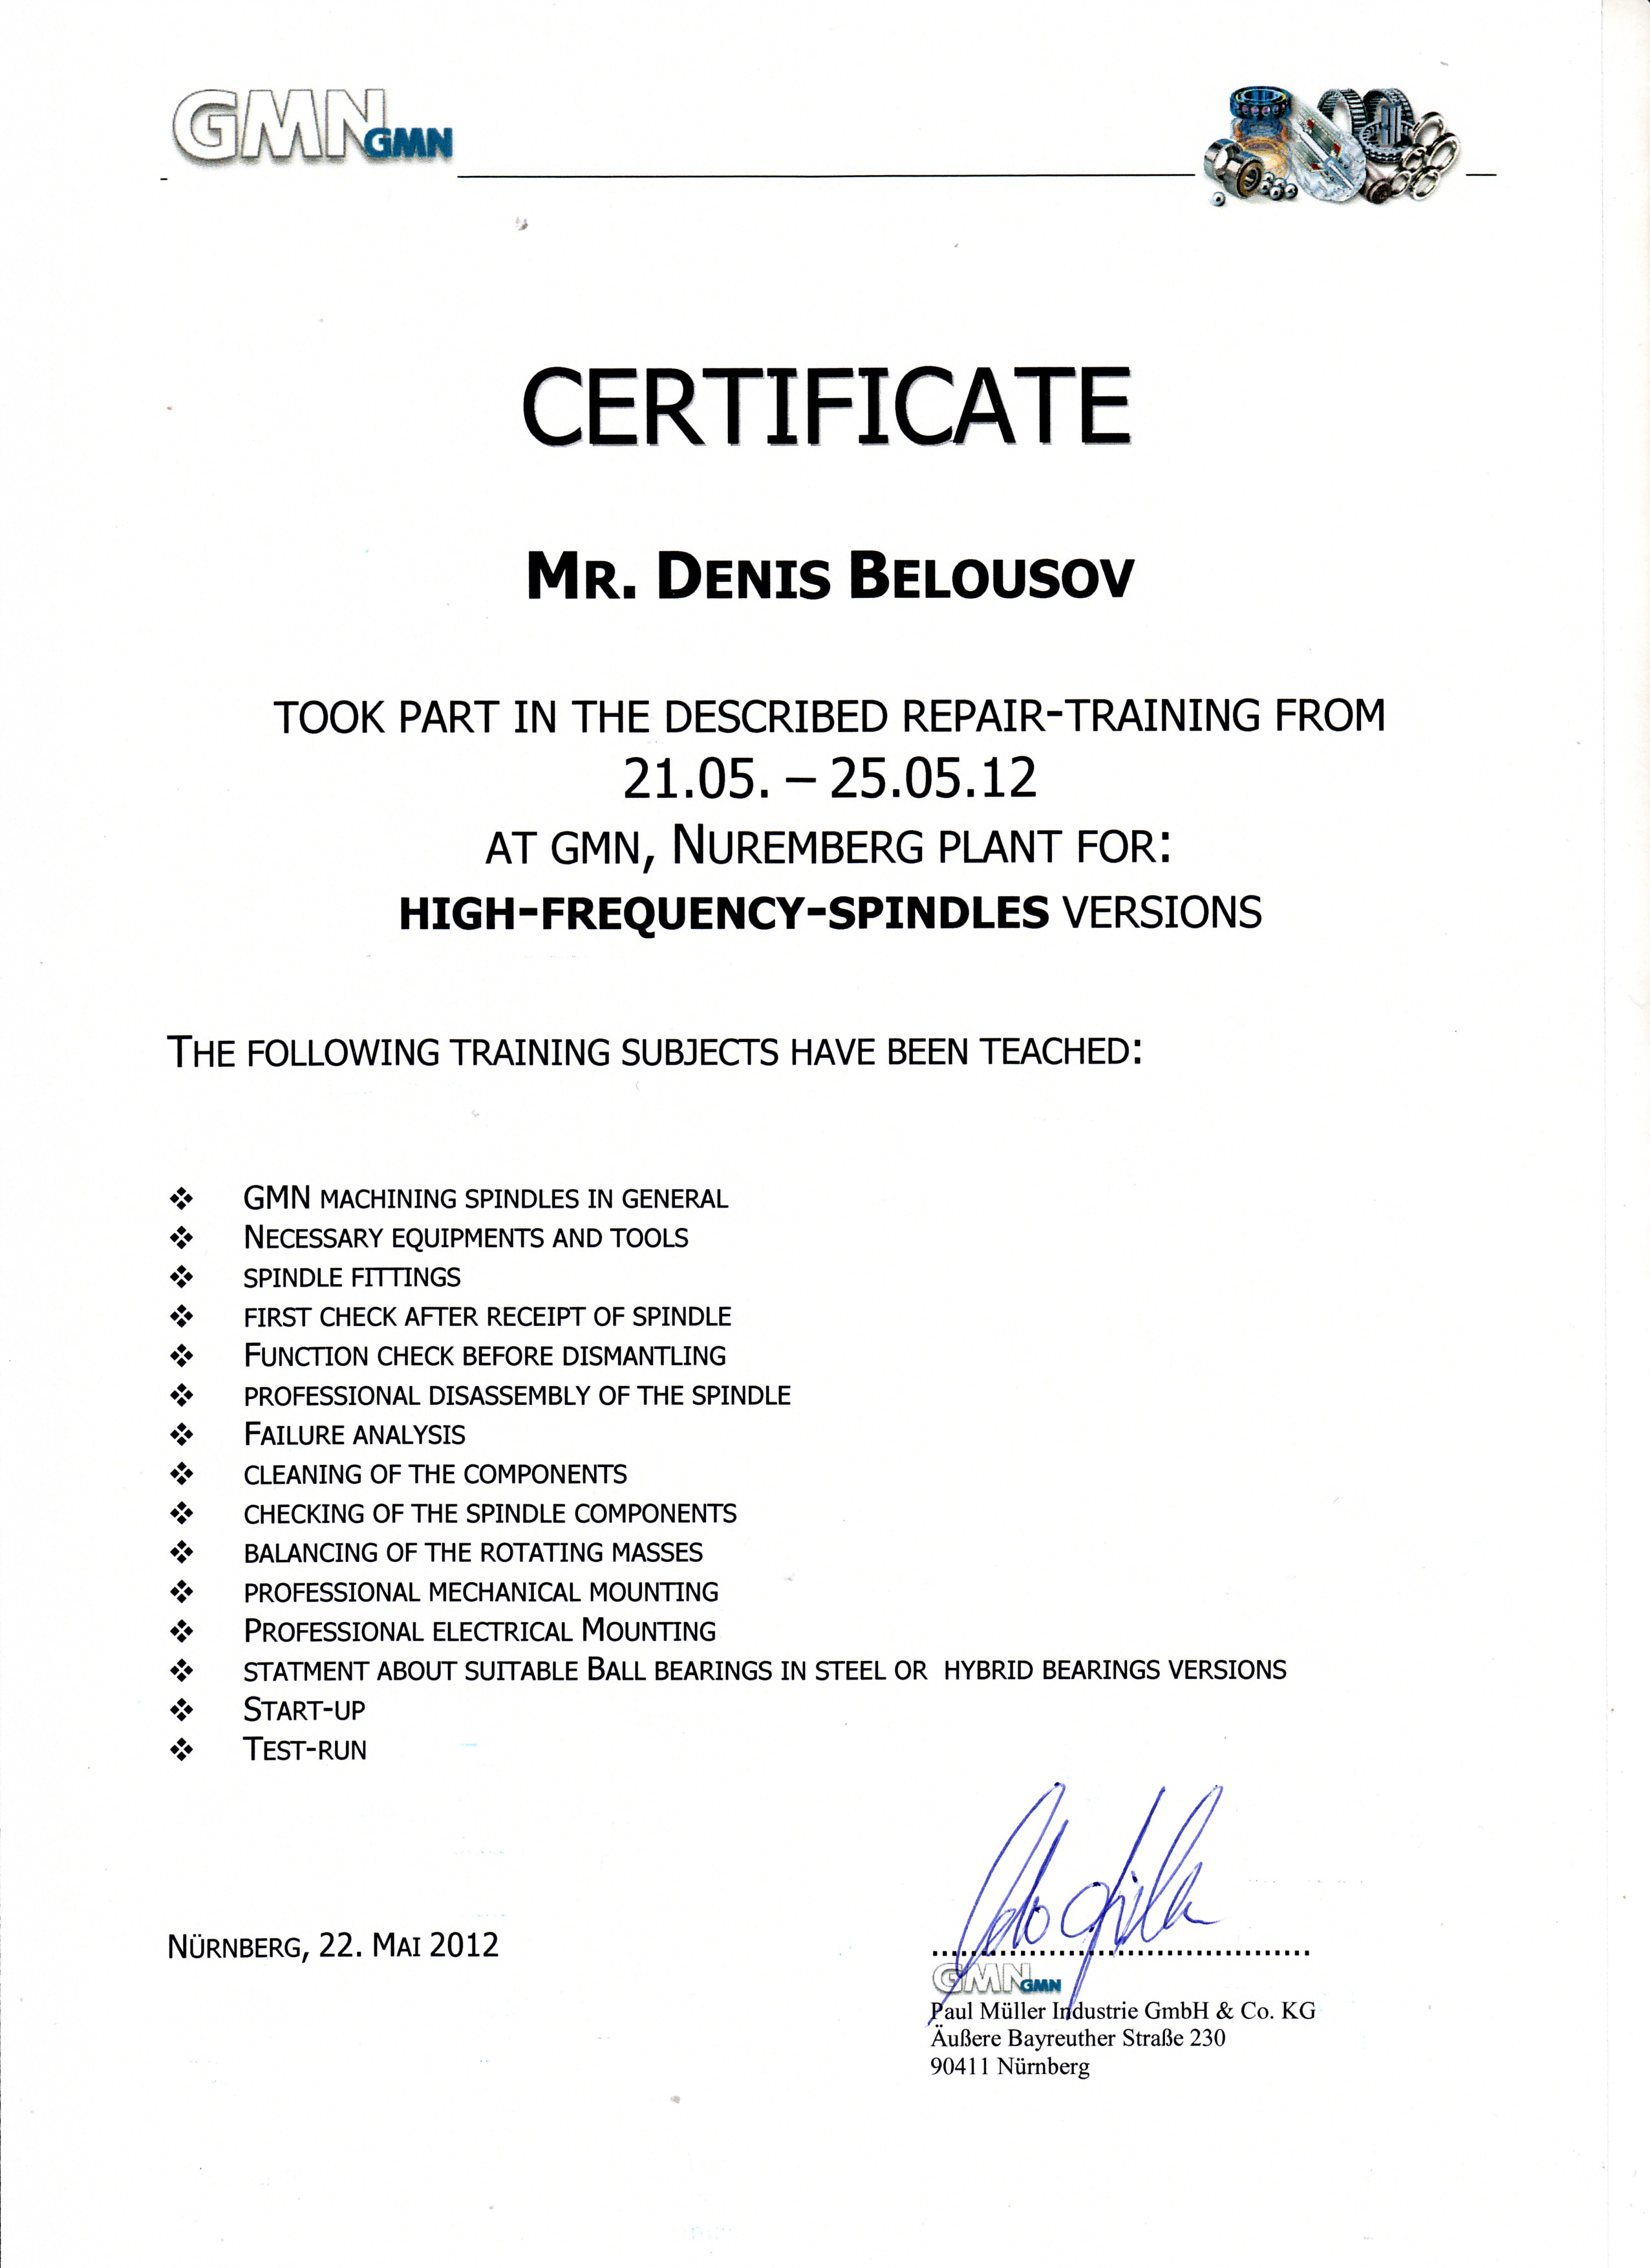 сертификат о прохождении обучения в Германии на заводе GMN. Белоусов